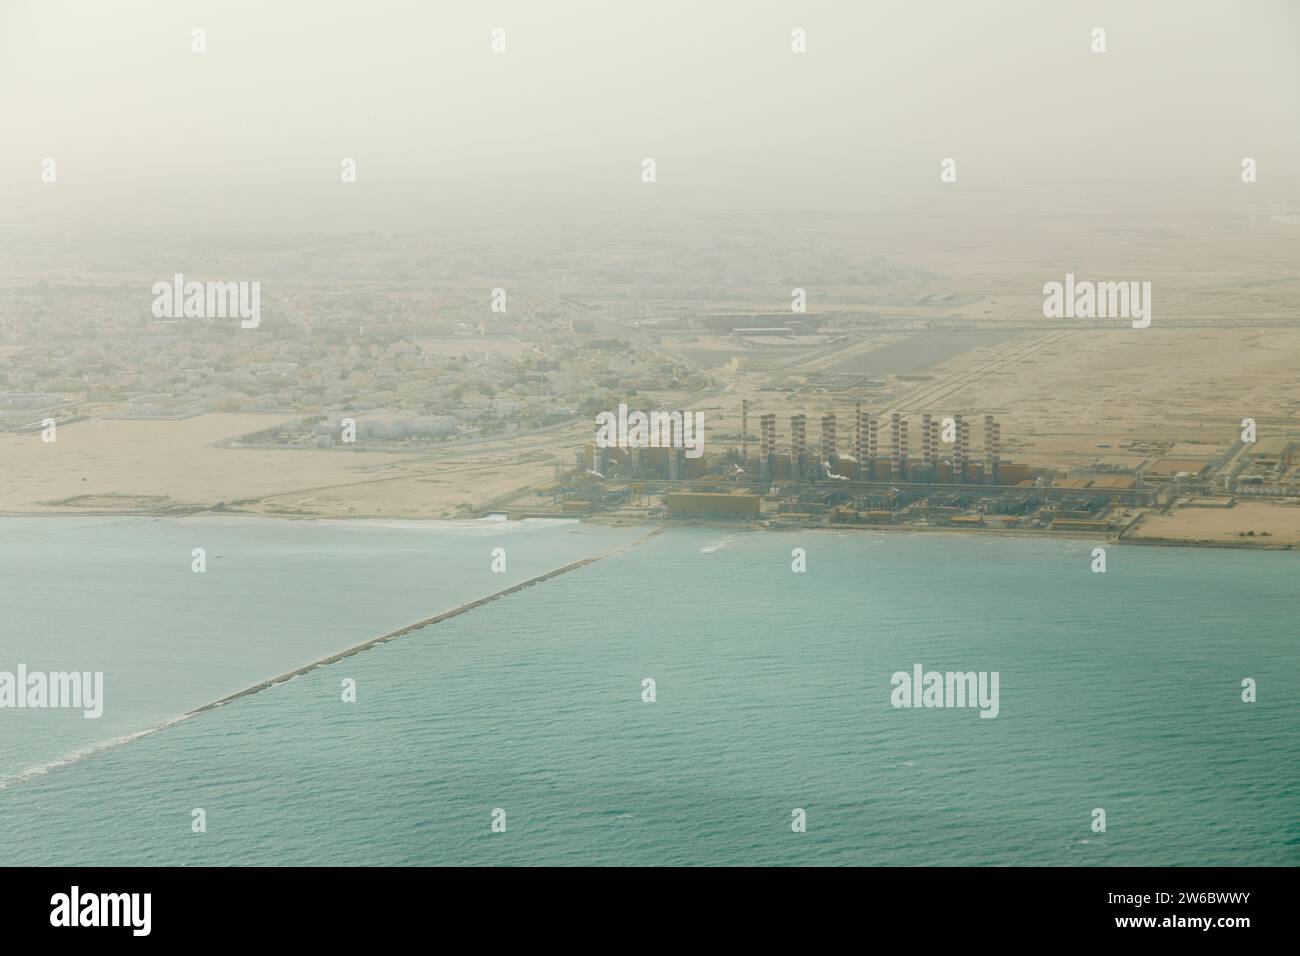 Vista aerea di una raffineria di gas naturale liquido e di una centrale elettrica sulla costa di Doha, Qatar, sul Golfo Persico, vista dall'alto in una giornata di fumo Foto Stock